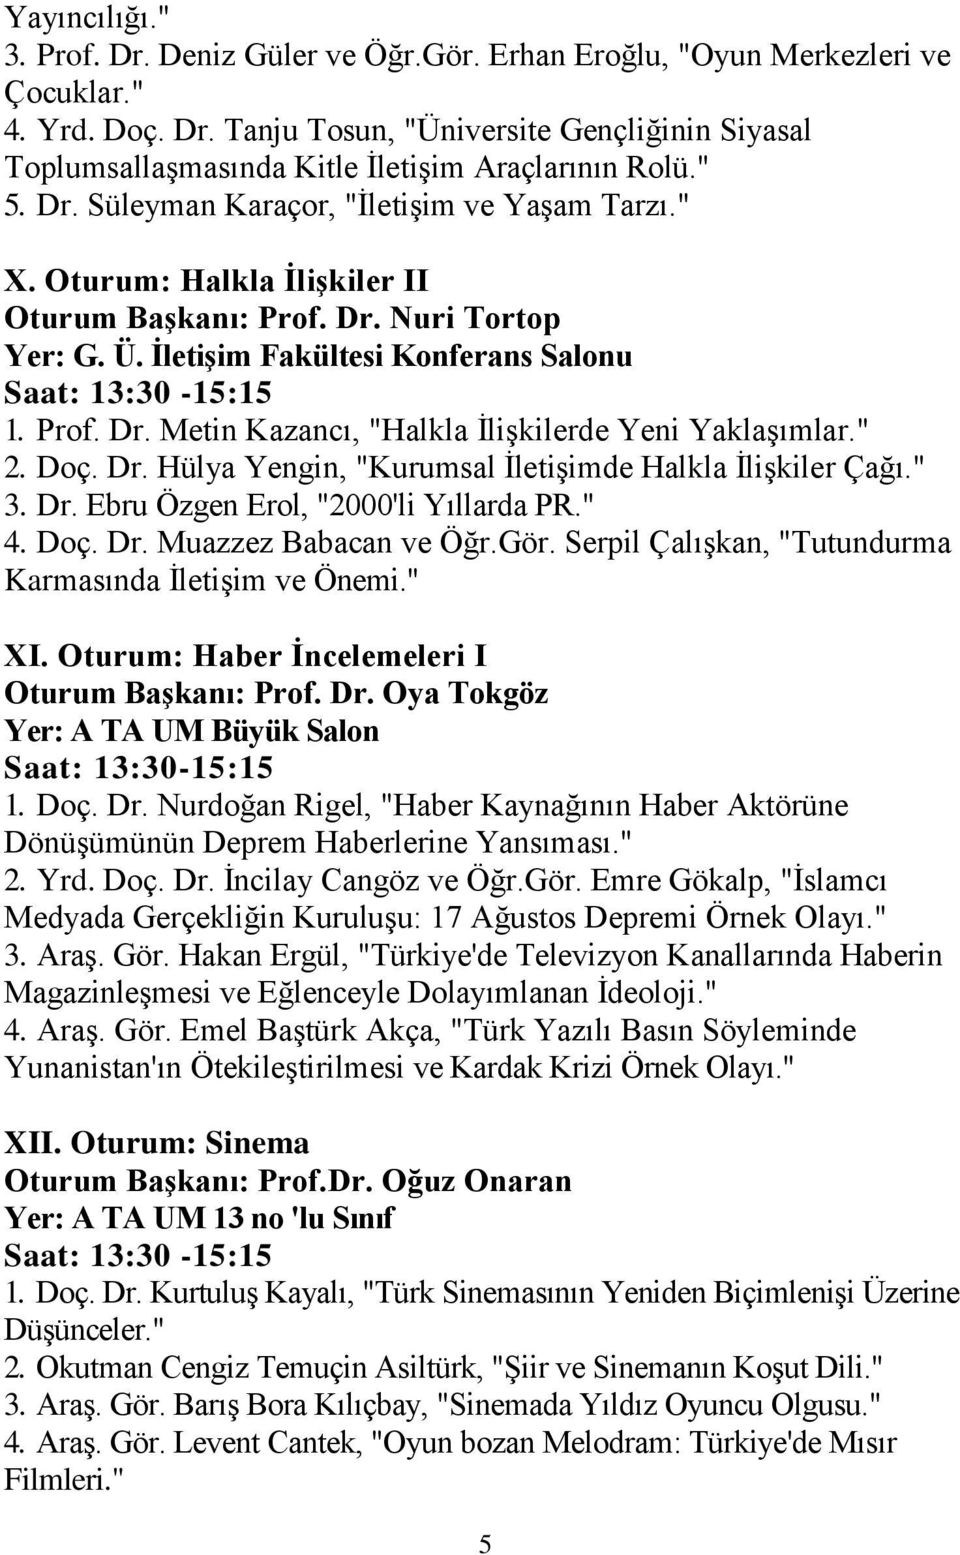 " 2. Doç. Dr. Hülya Yengin, "Kurumsal İletişimde Halkla İlişkiler Çağı." 3. Dr. Ebru Özgen Erol, "2000'li Yıllarda PR." 4. Doç. Dr. Muazzez Babacan ve Öğr.Gör.